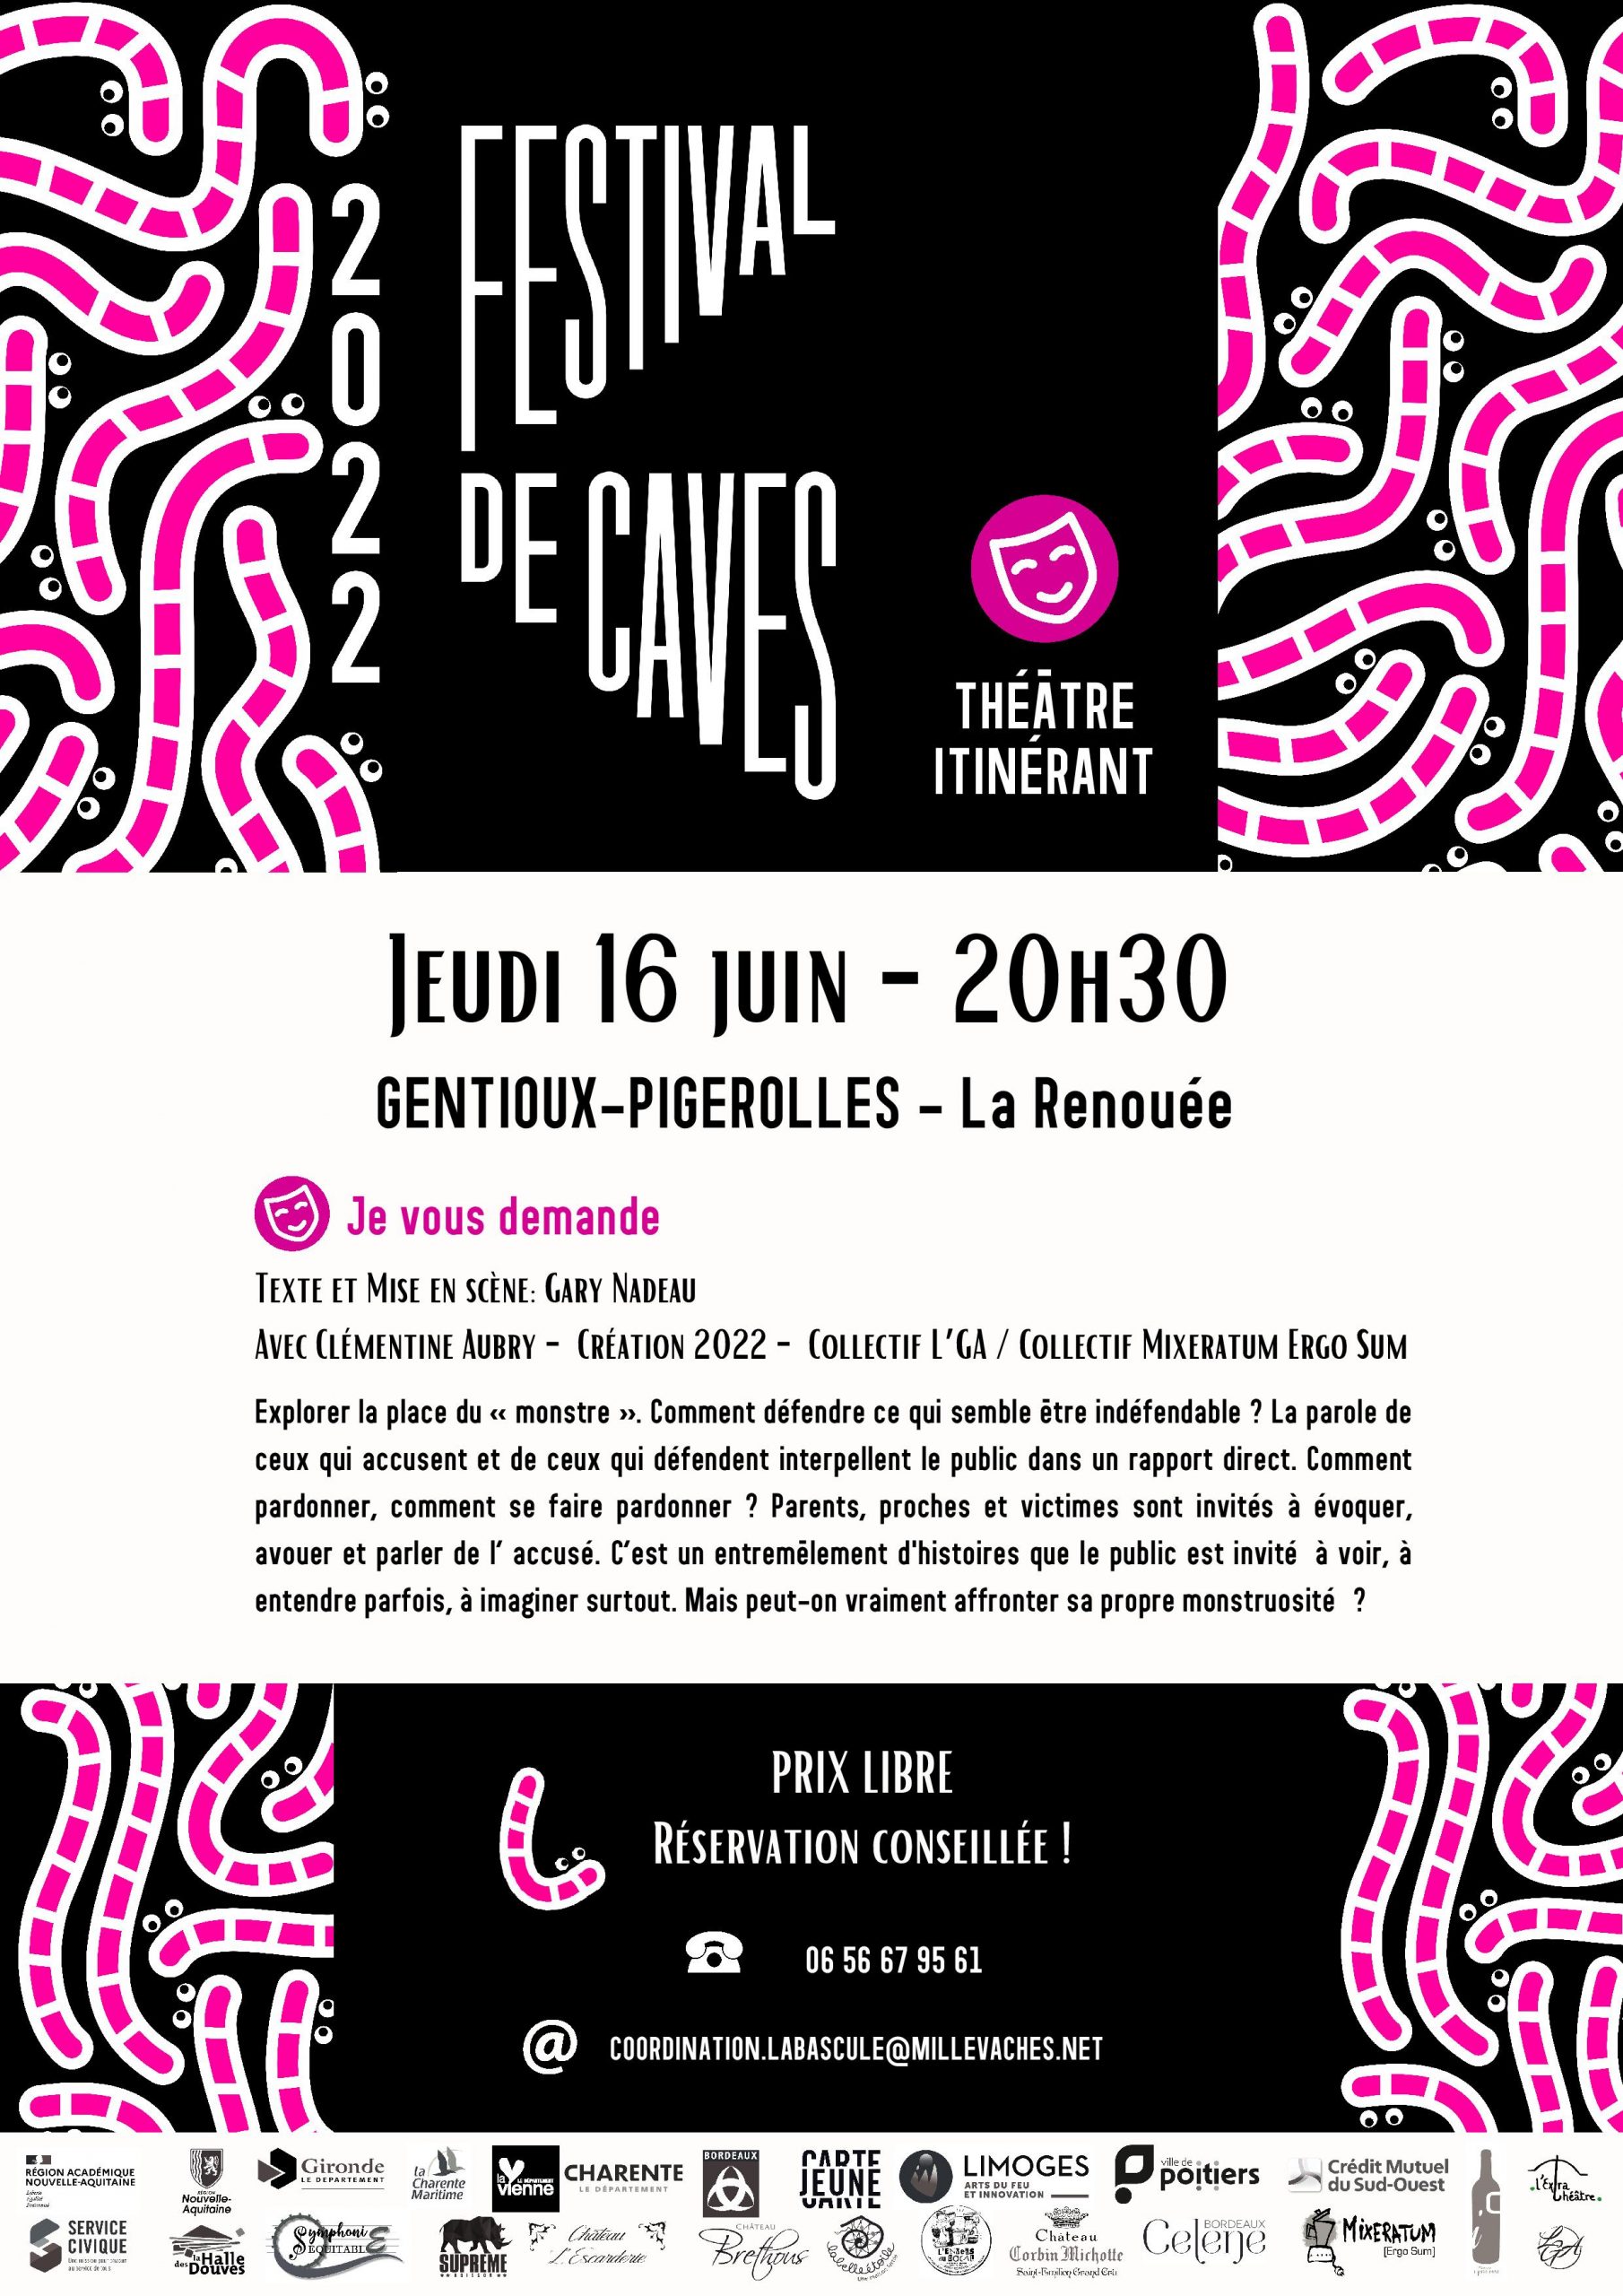 Jeudi 16 juin Festival de caves: Théâtre itinérant à 20h30 à La Renouée « Je vous demande »